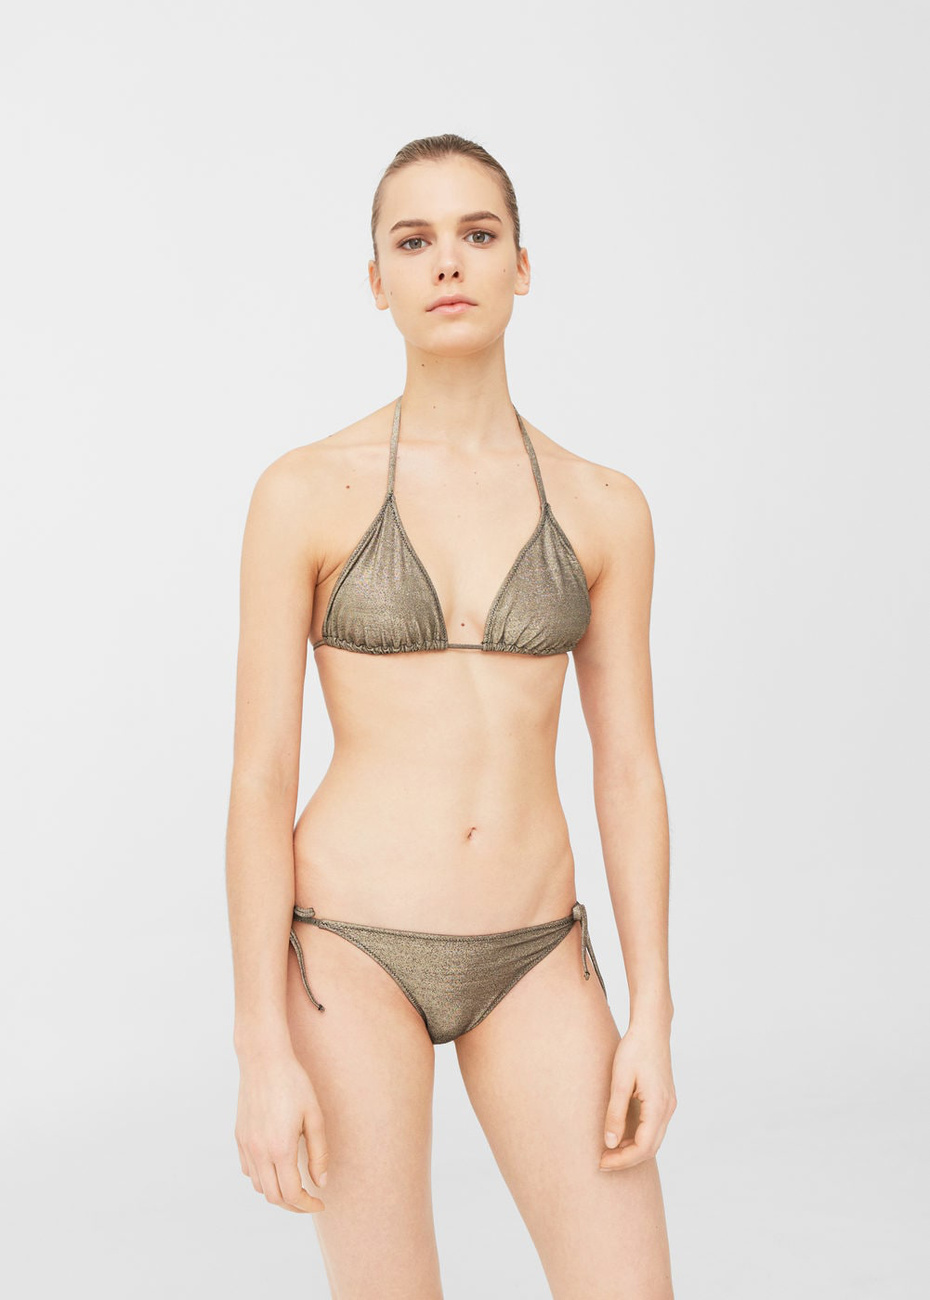 A horgolt bikini is 32 euróba, kb.9985 forintba kerül az asos.com oldalán.


